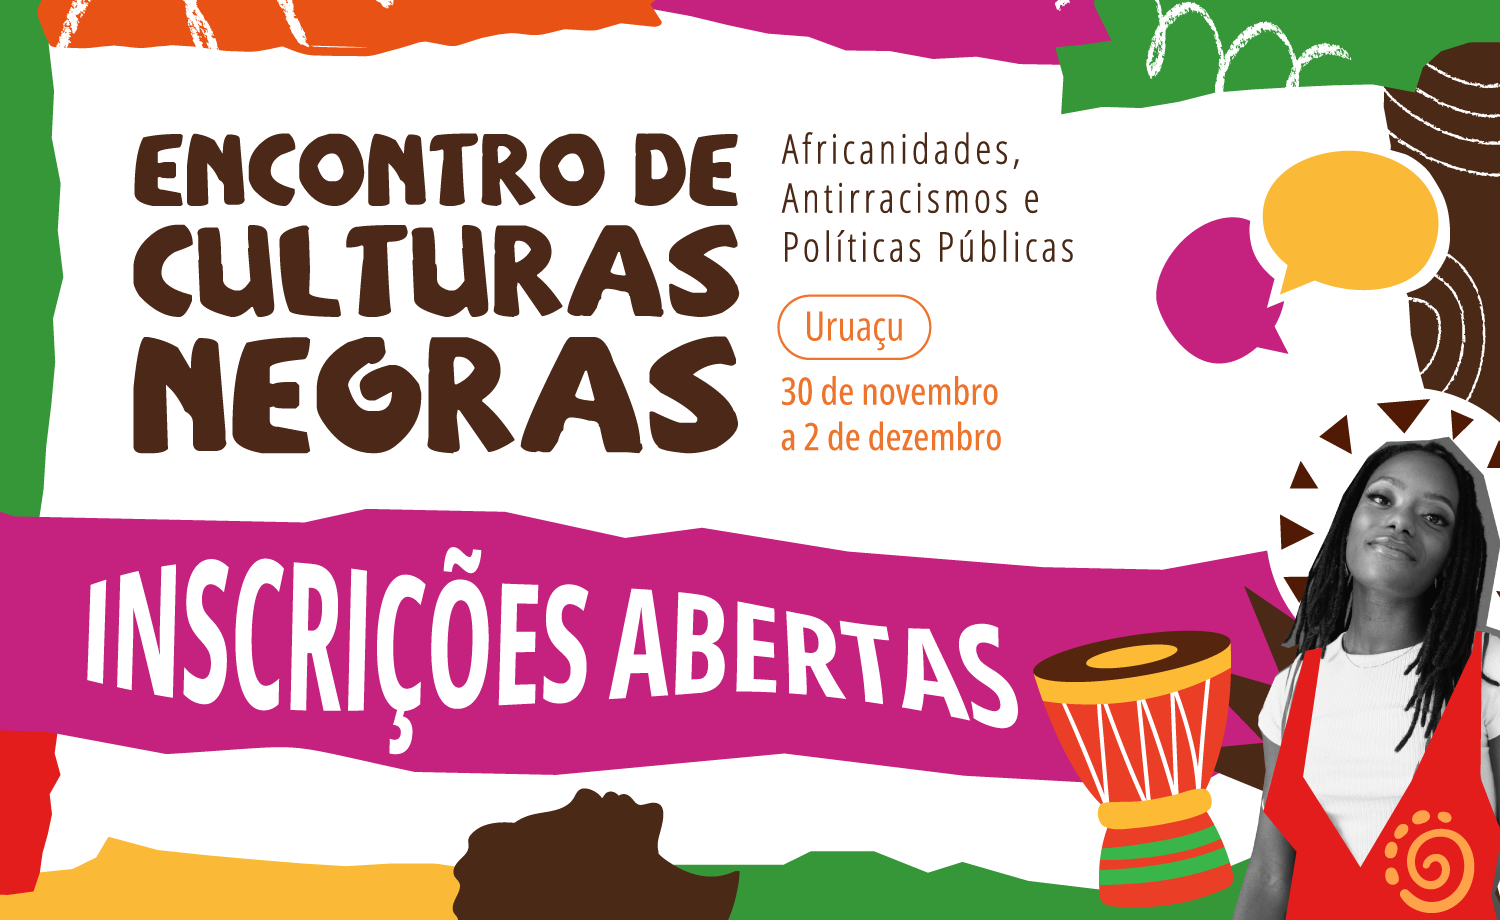 5º Encontro de Culturas Negras do IFG será realizado em Uruaçu. Inscrições abertas